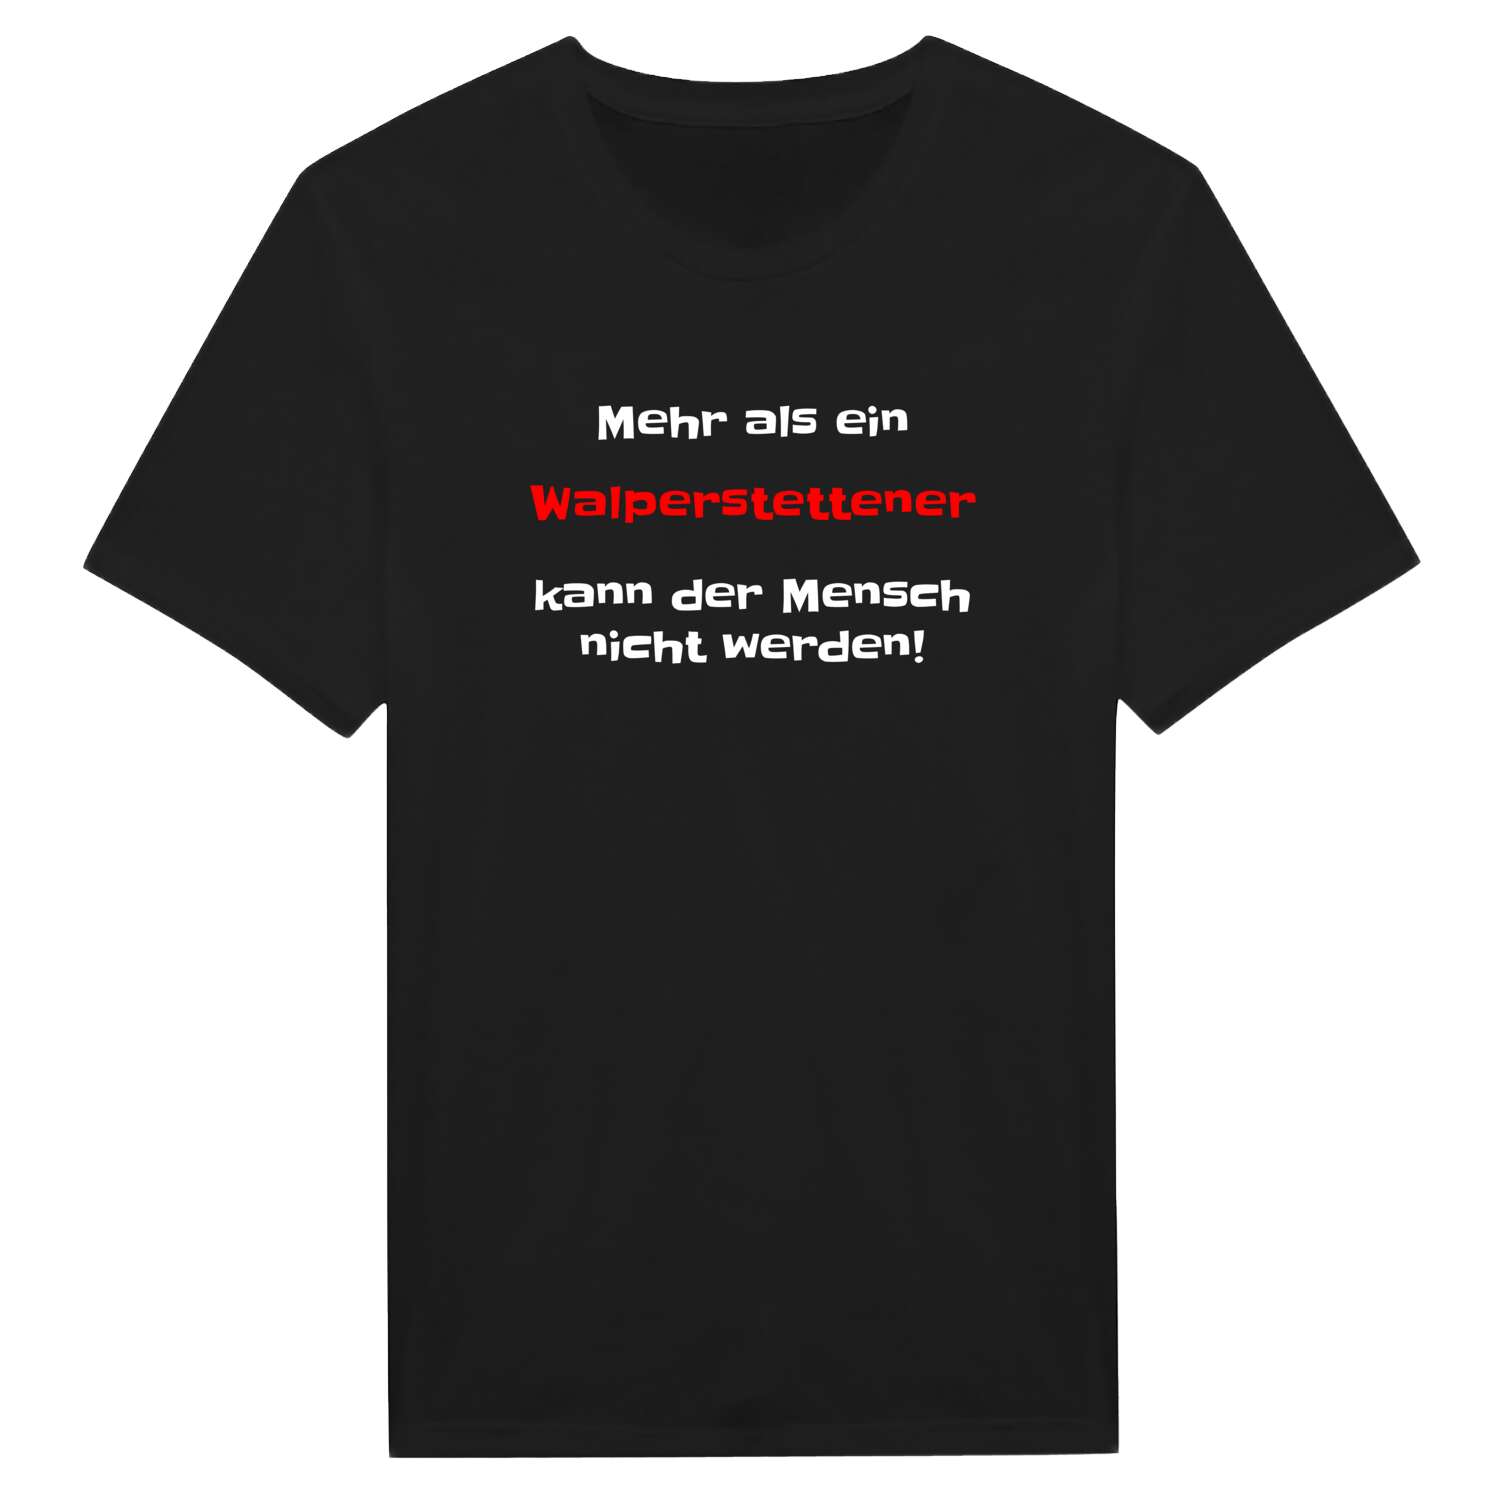 Walperstetten T-Shirt »Mehr als ein«